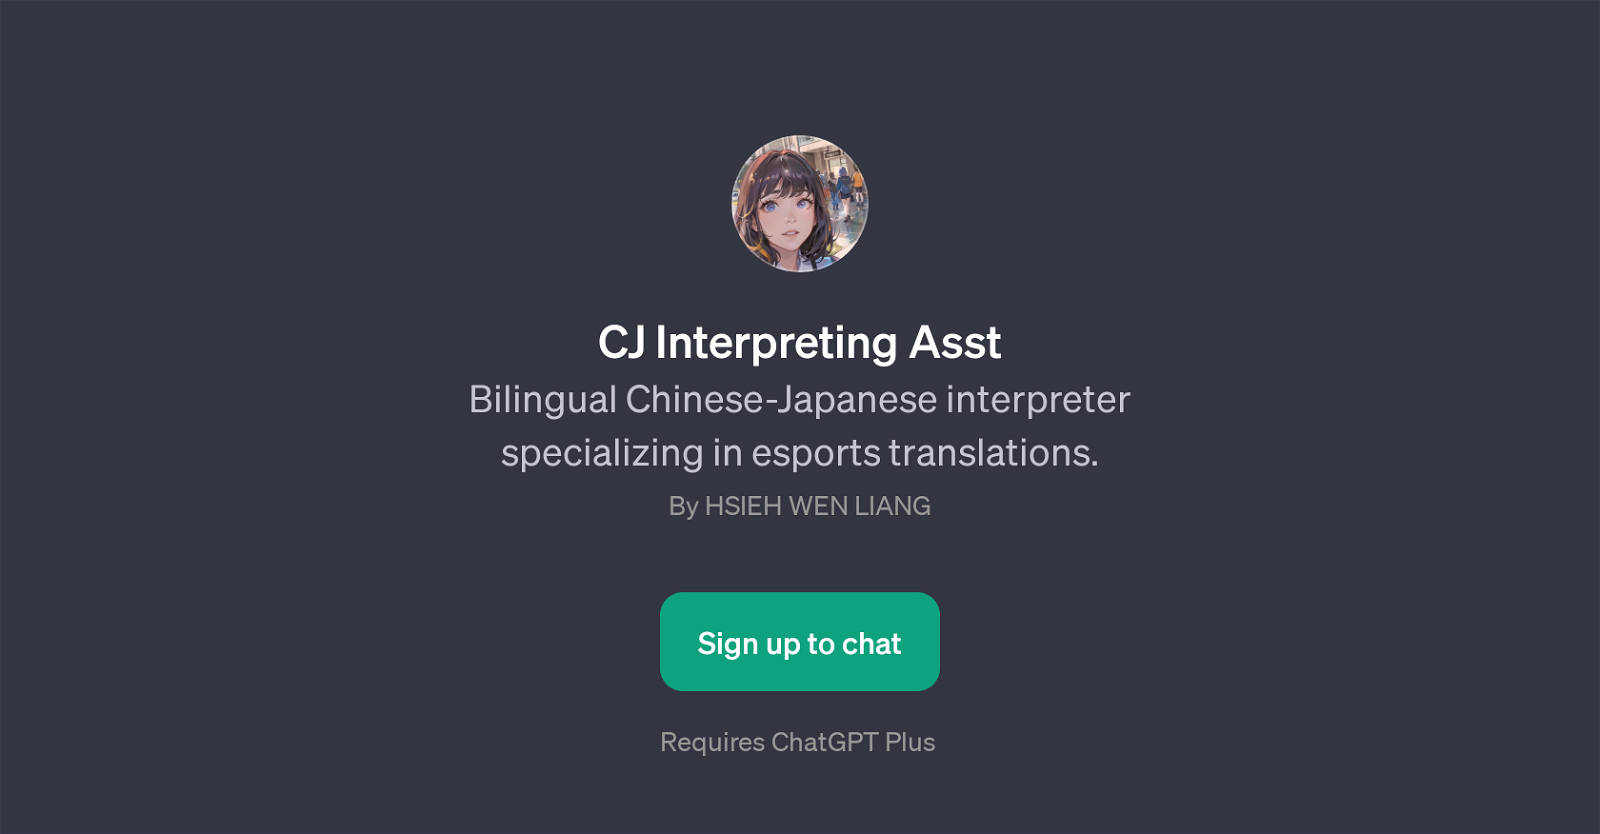 CJ Interpreting Asst website